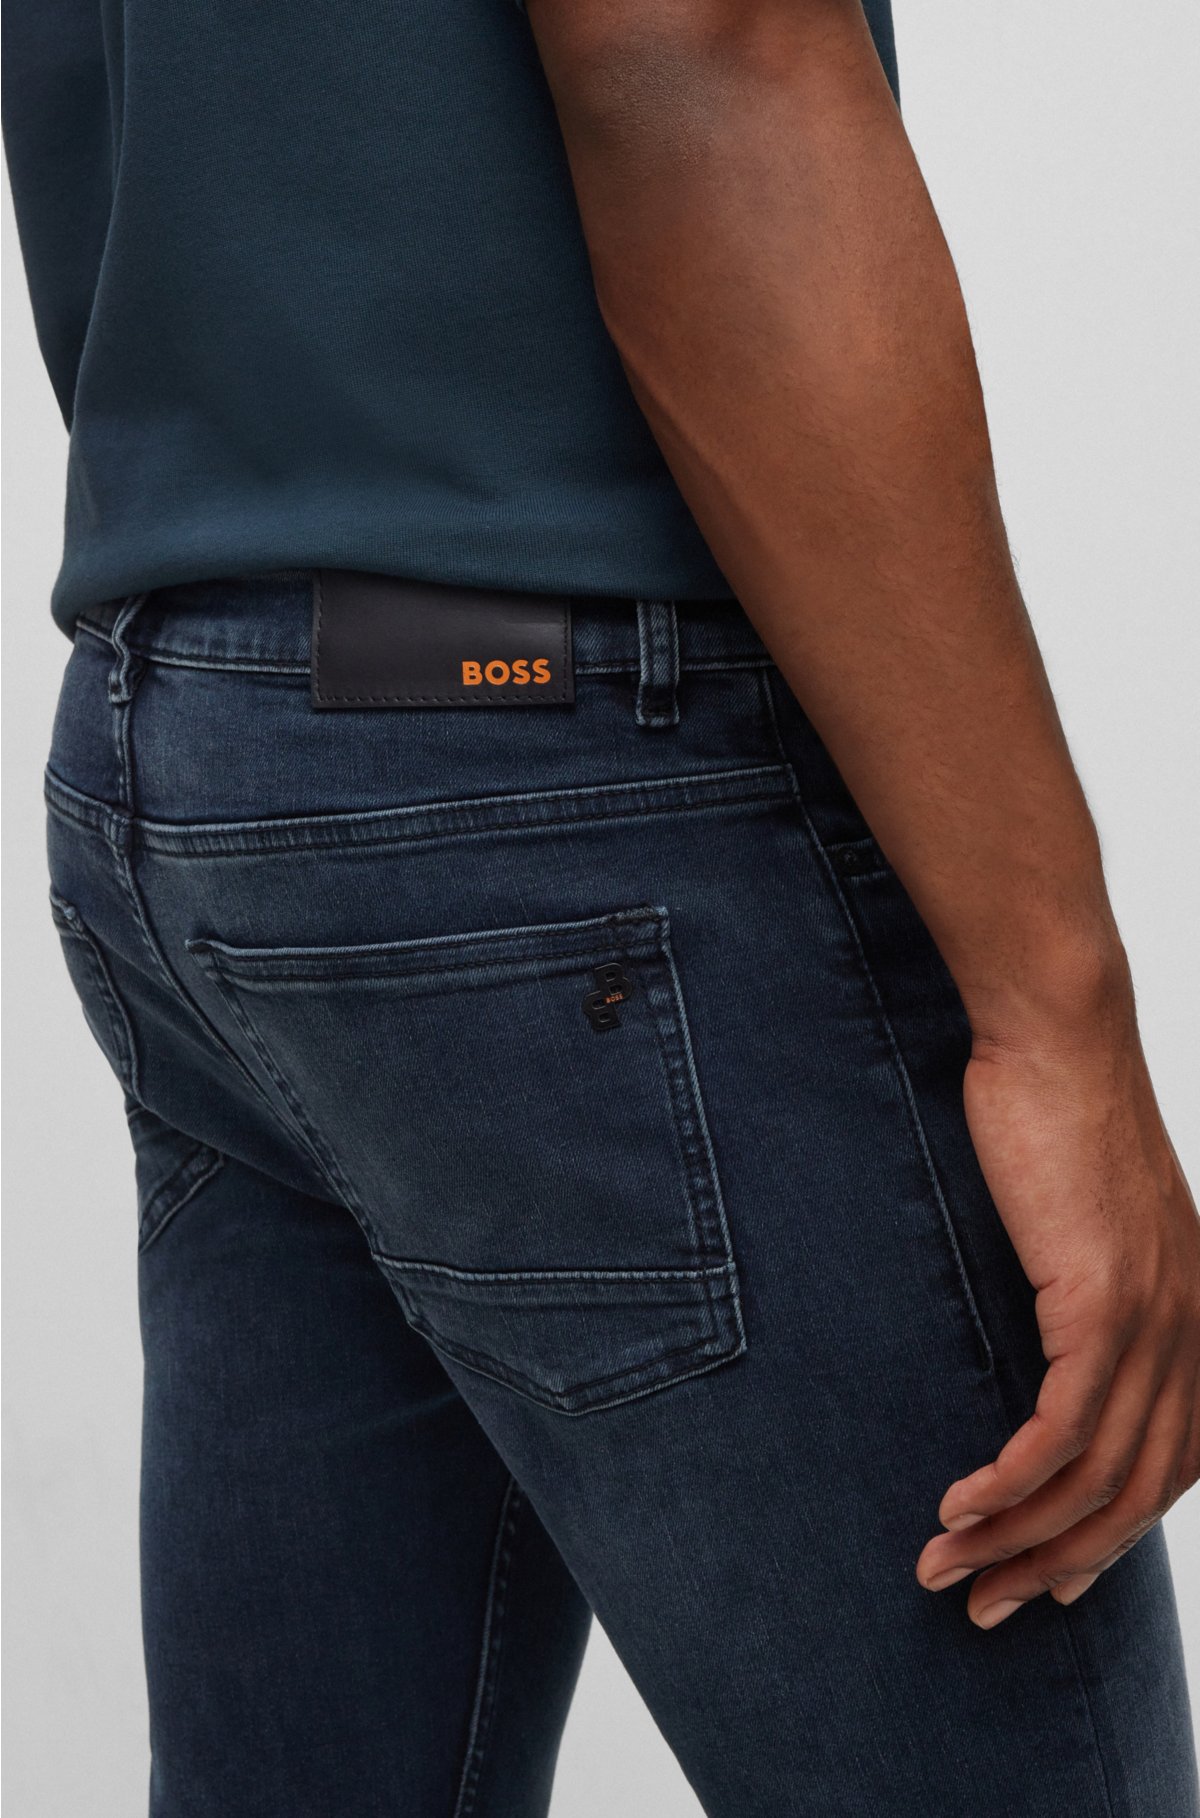 denim - super-stretch dark-blue jeans in BOSS Slim-fit